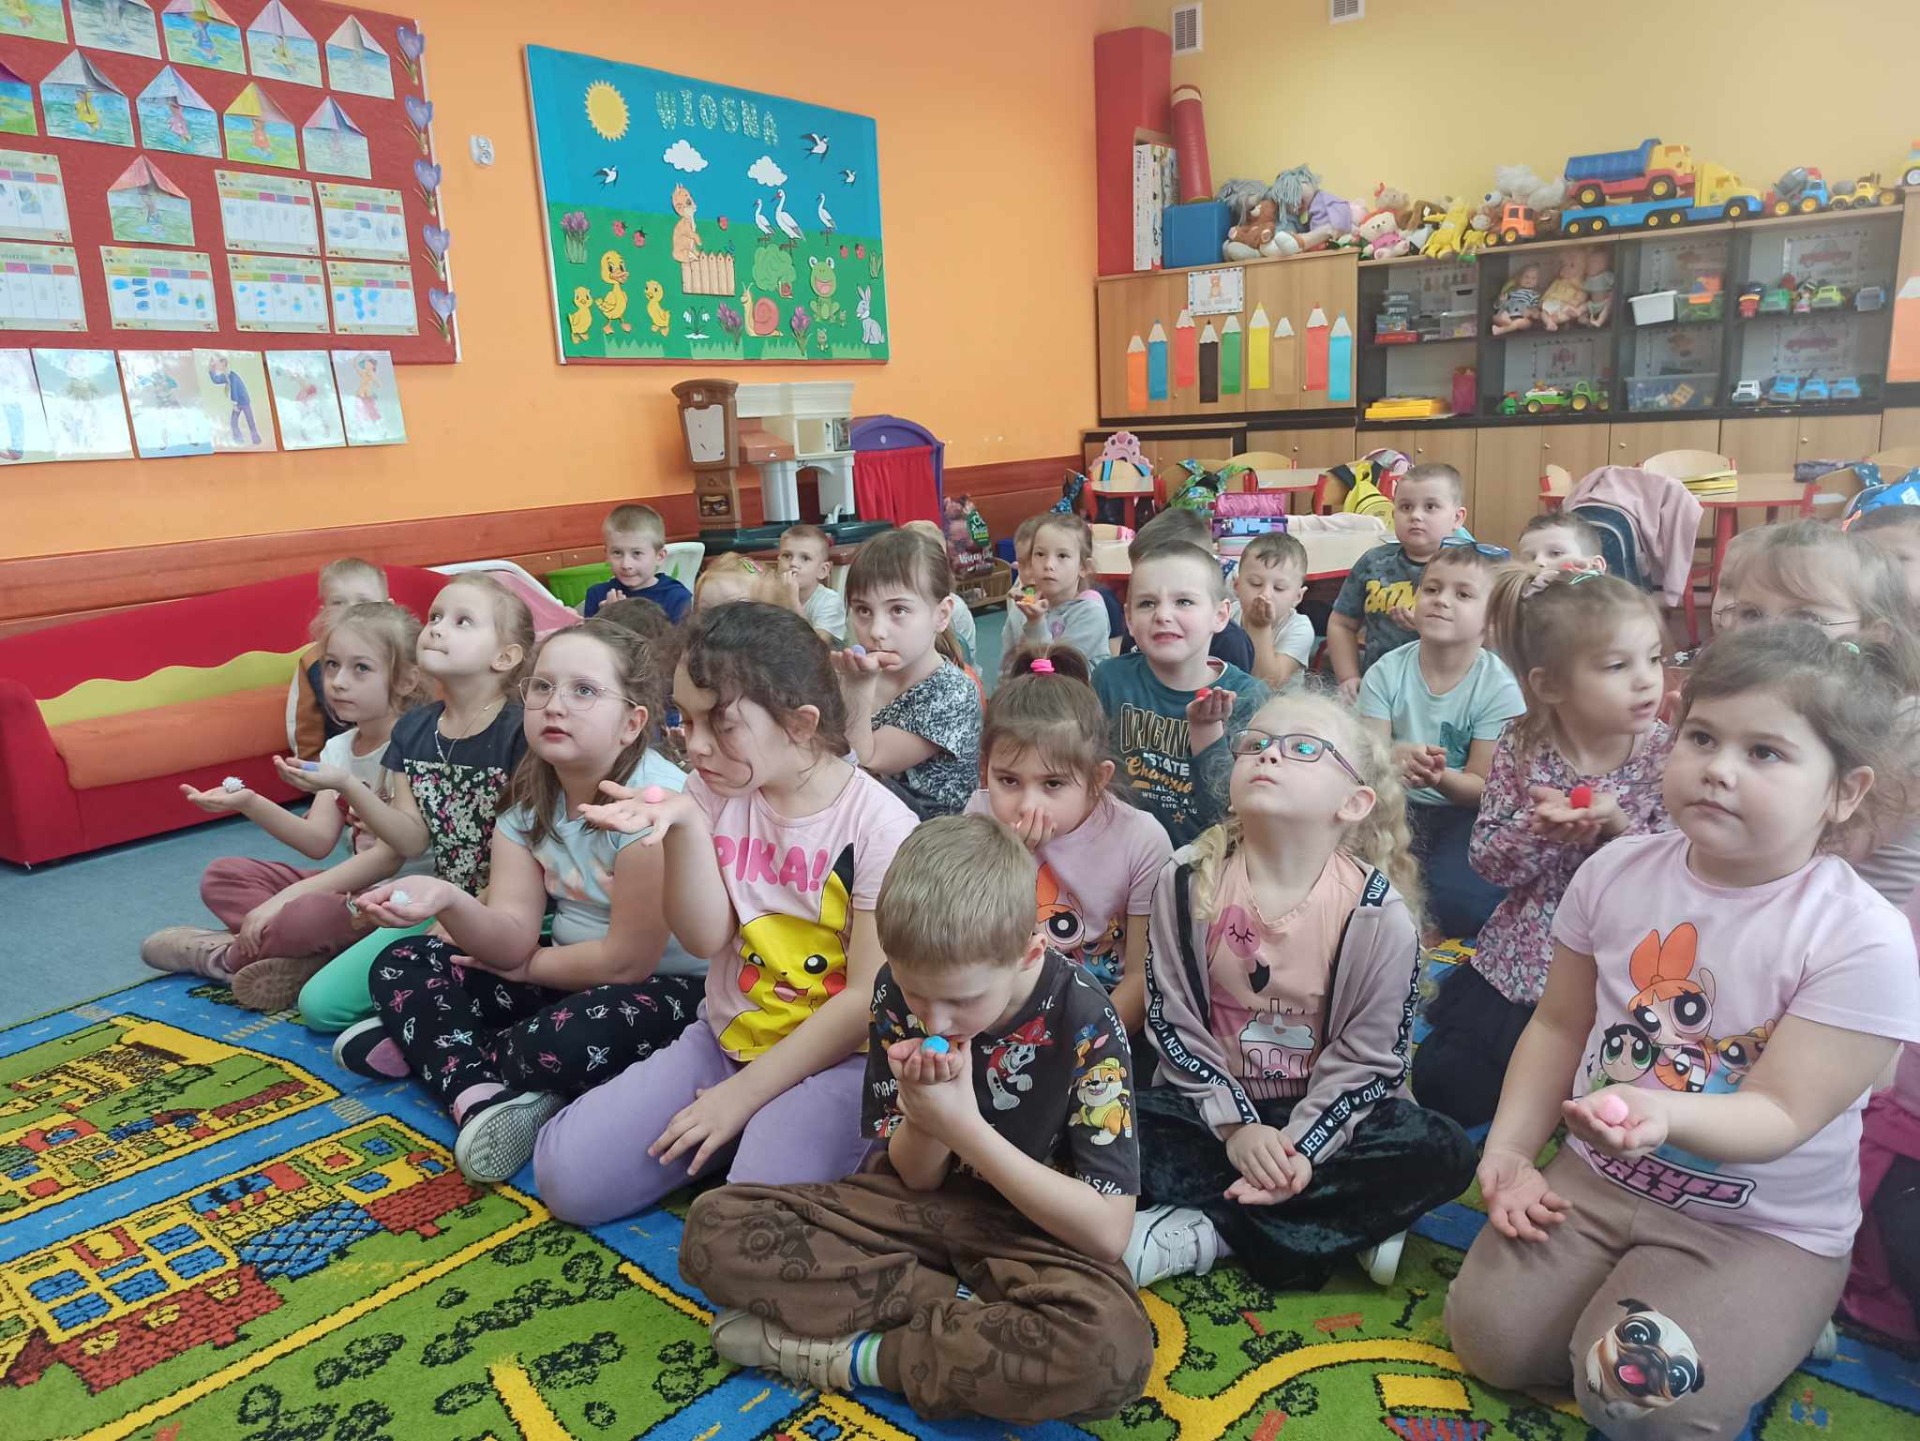 Kilkudziesięciu przedszkolaków siedzi na kolorowym dywanie i wykonuje ćwiczenia oddechowe.